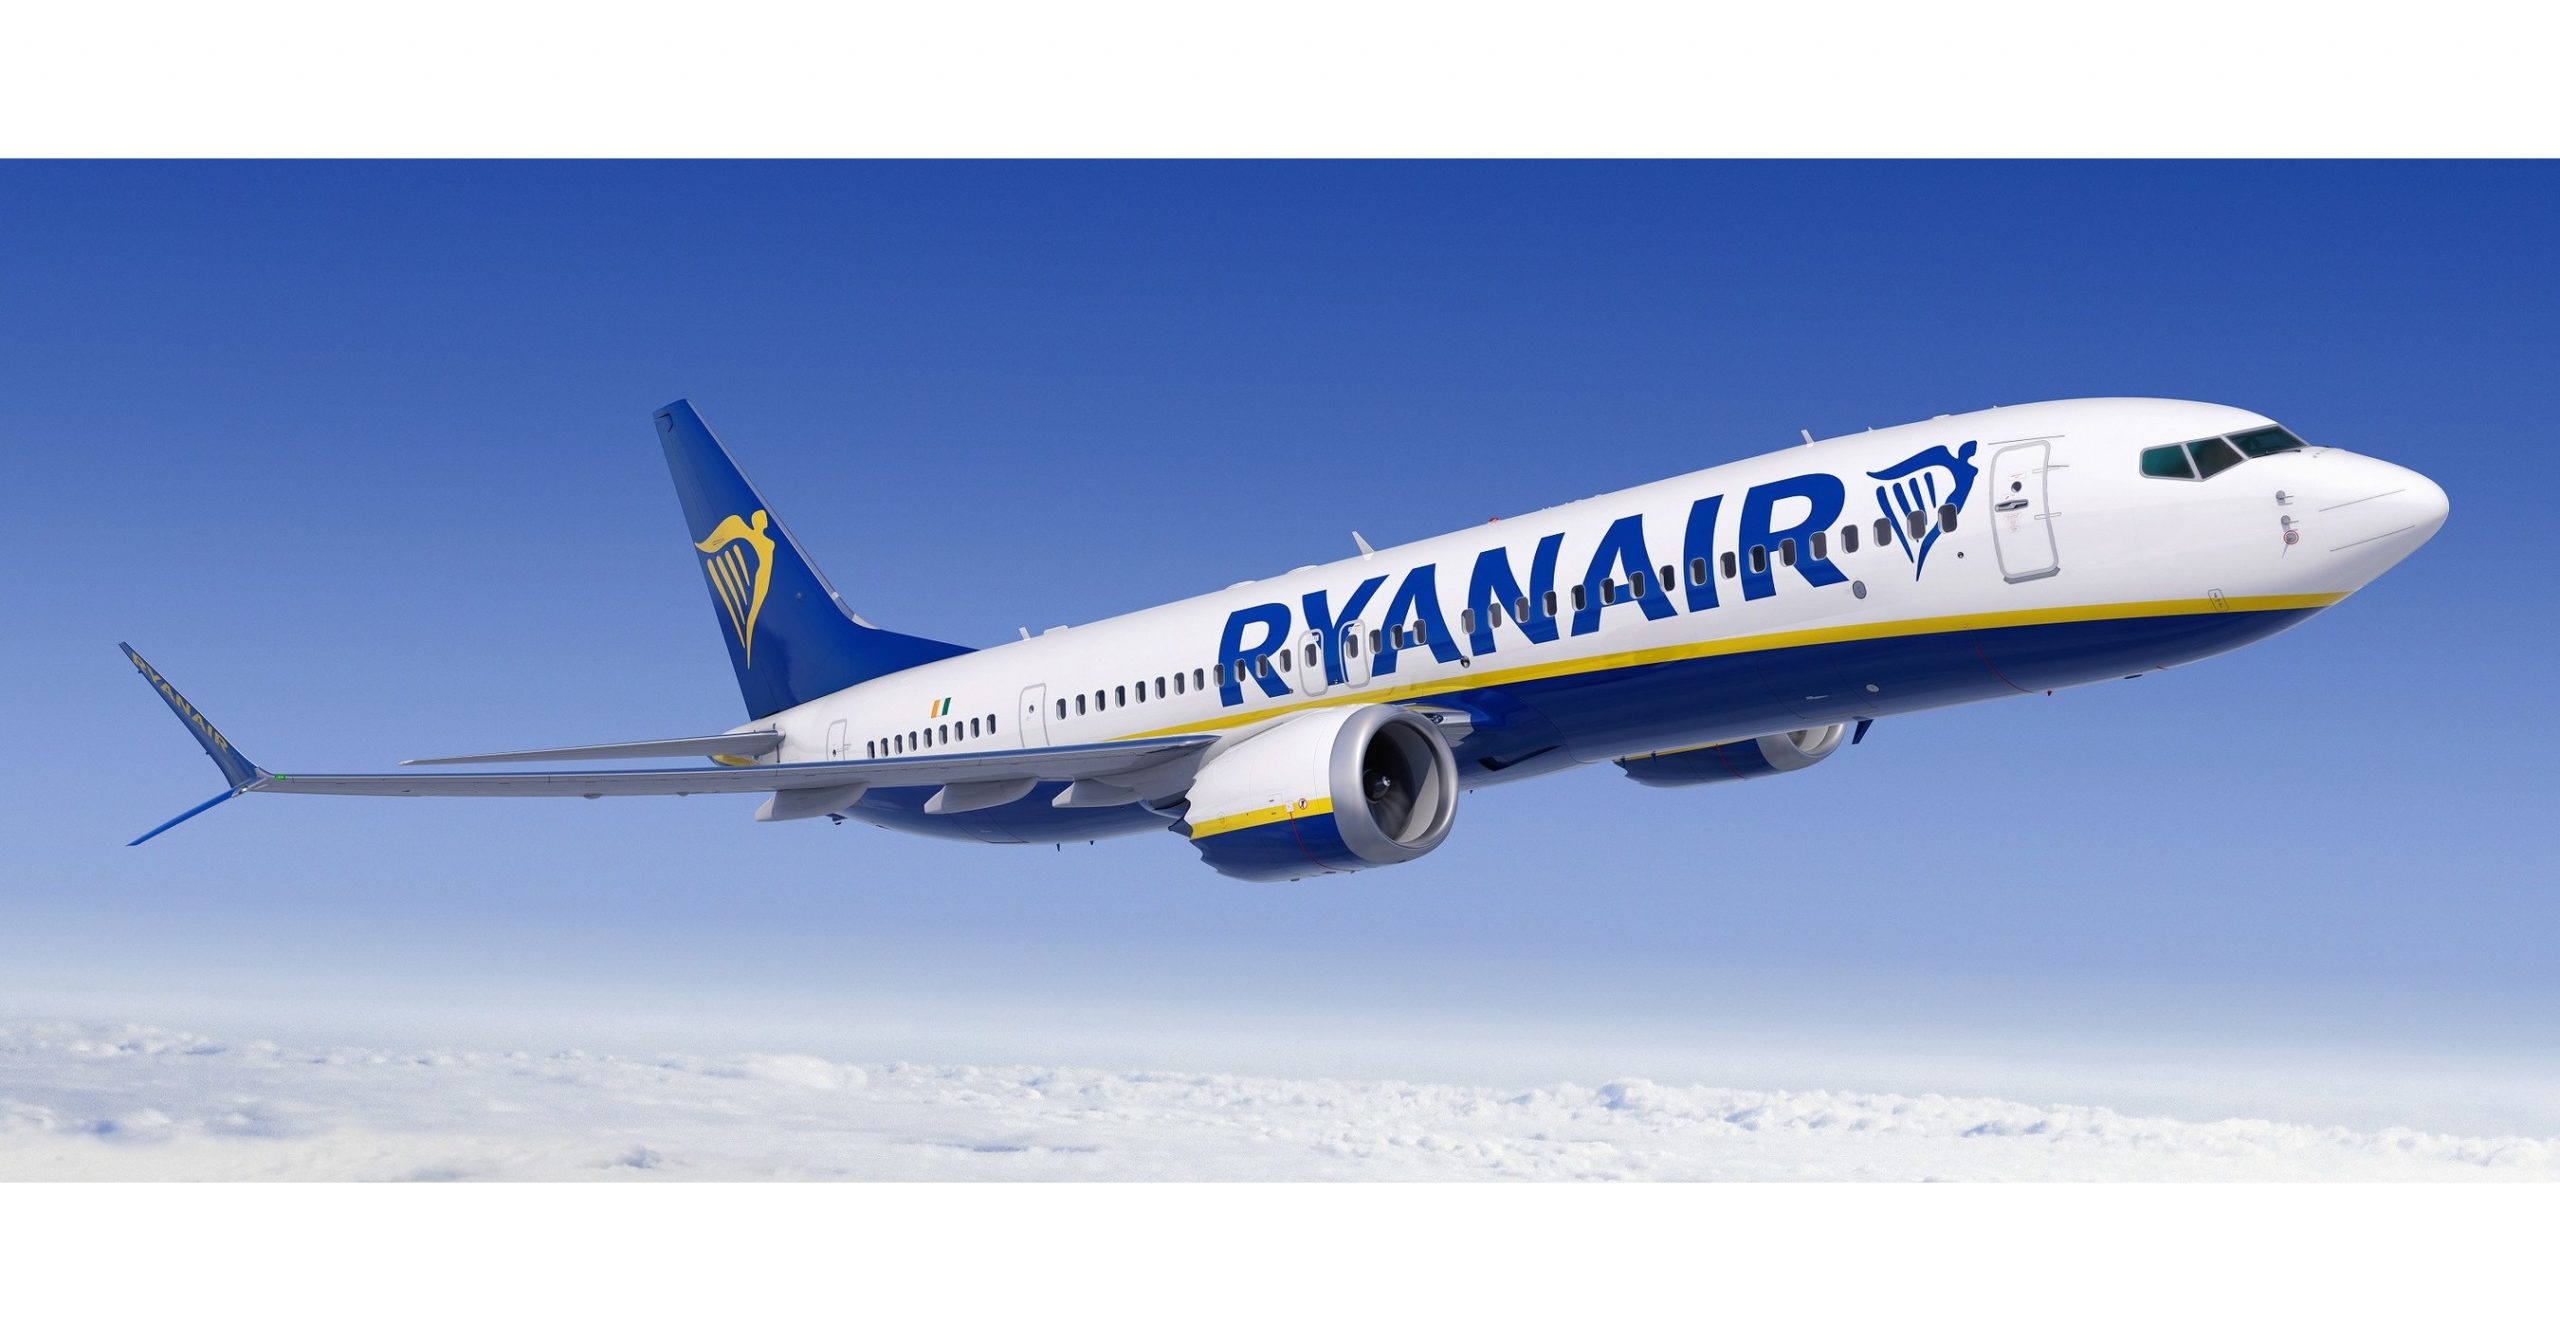 Η Ryanair σε ταξιδεύει σε έναν εντυπωσιακό προορισμό, με μόνο €4.99